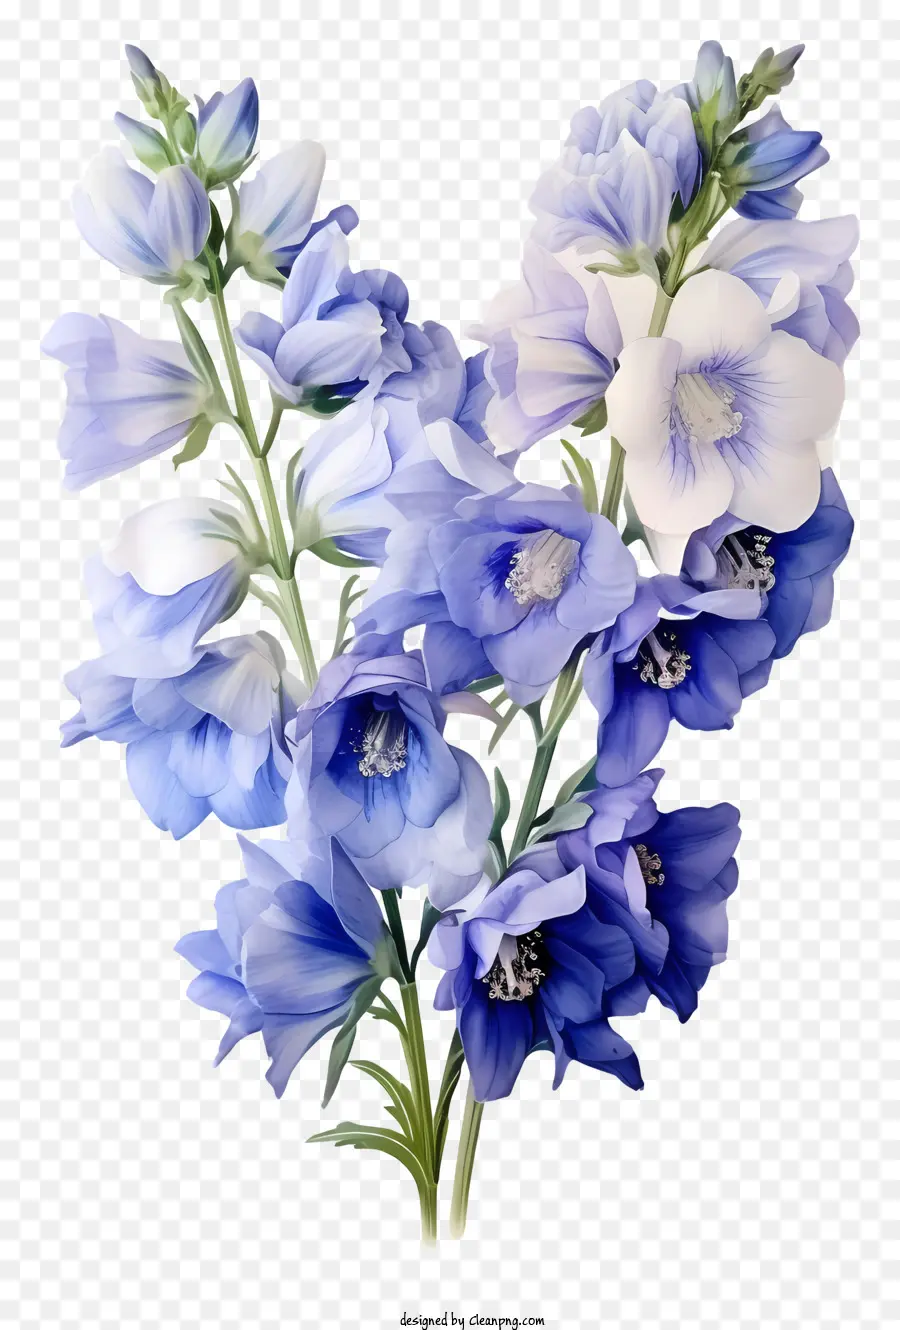 fiore blu - Primo piano del fiore blu con petali bianchi